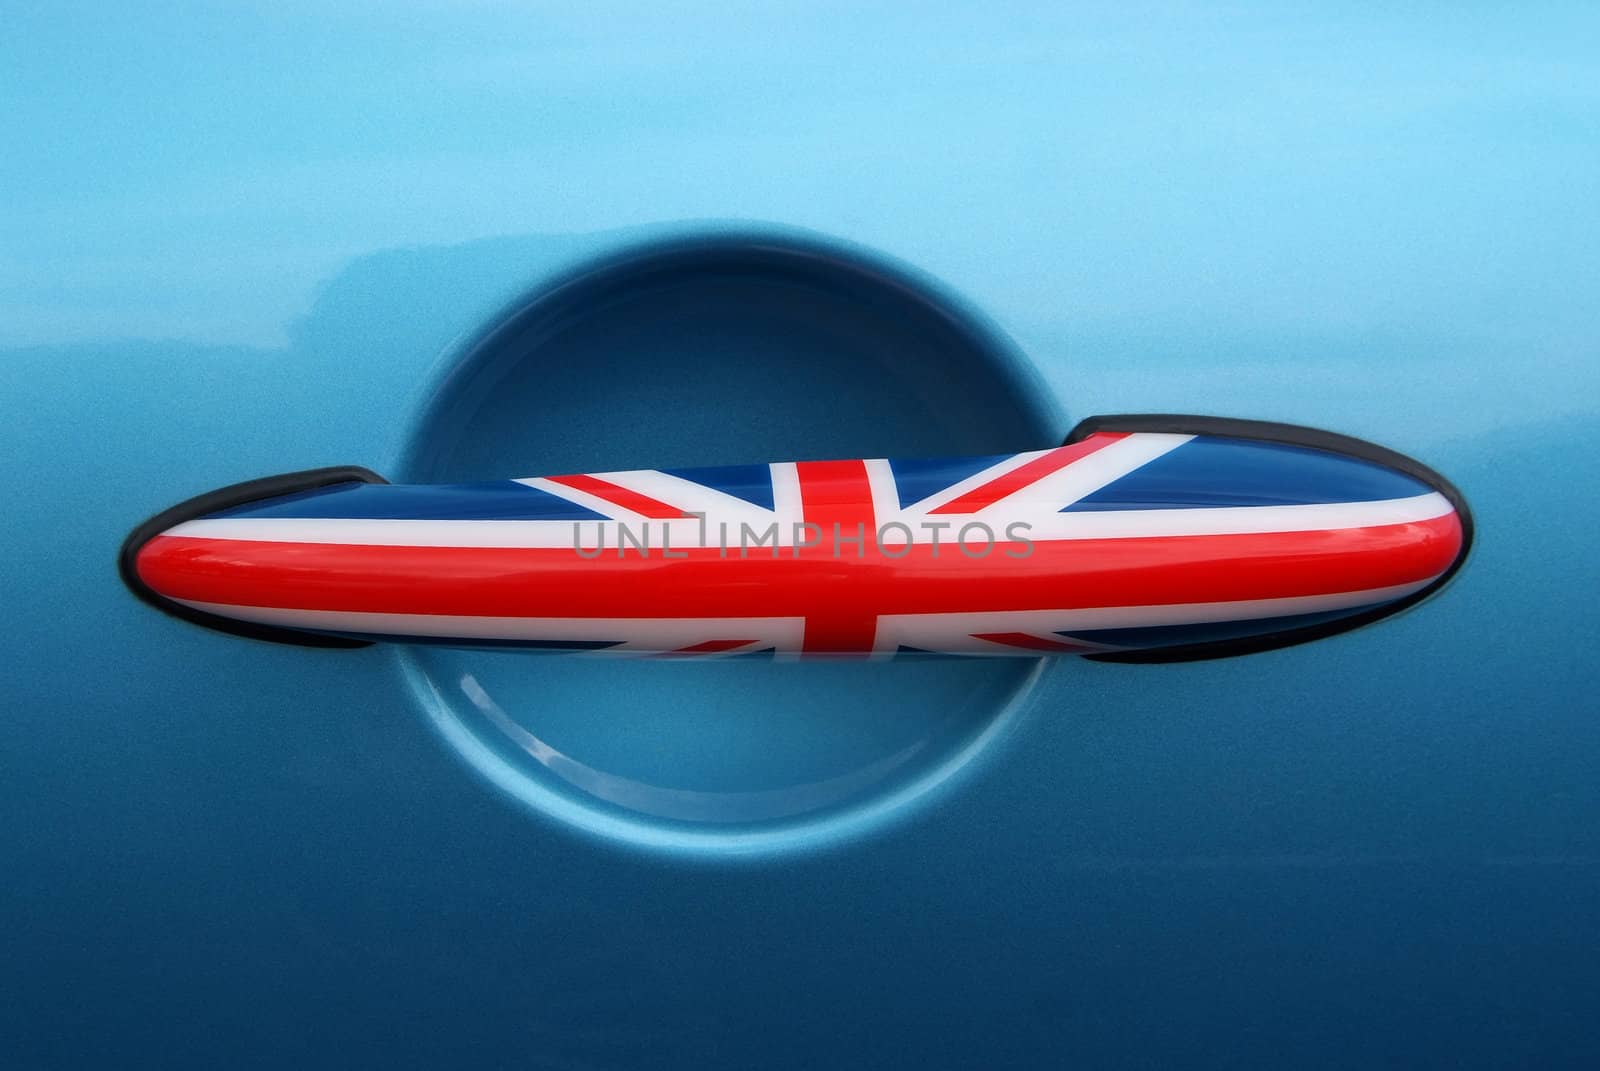 British flag design car door handles. by opasstudio